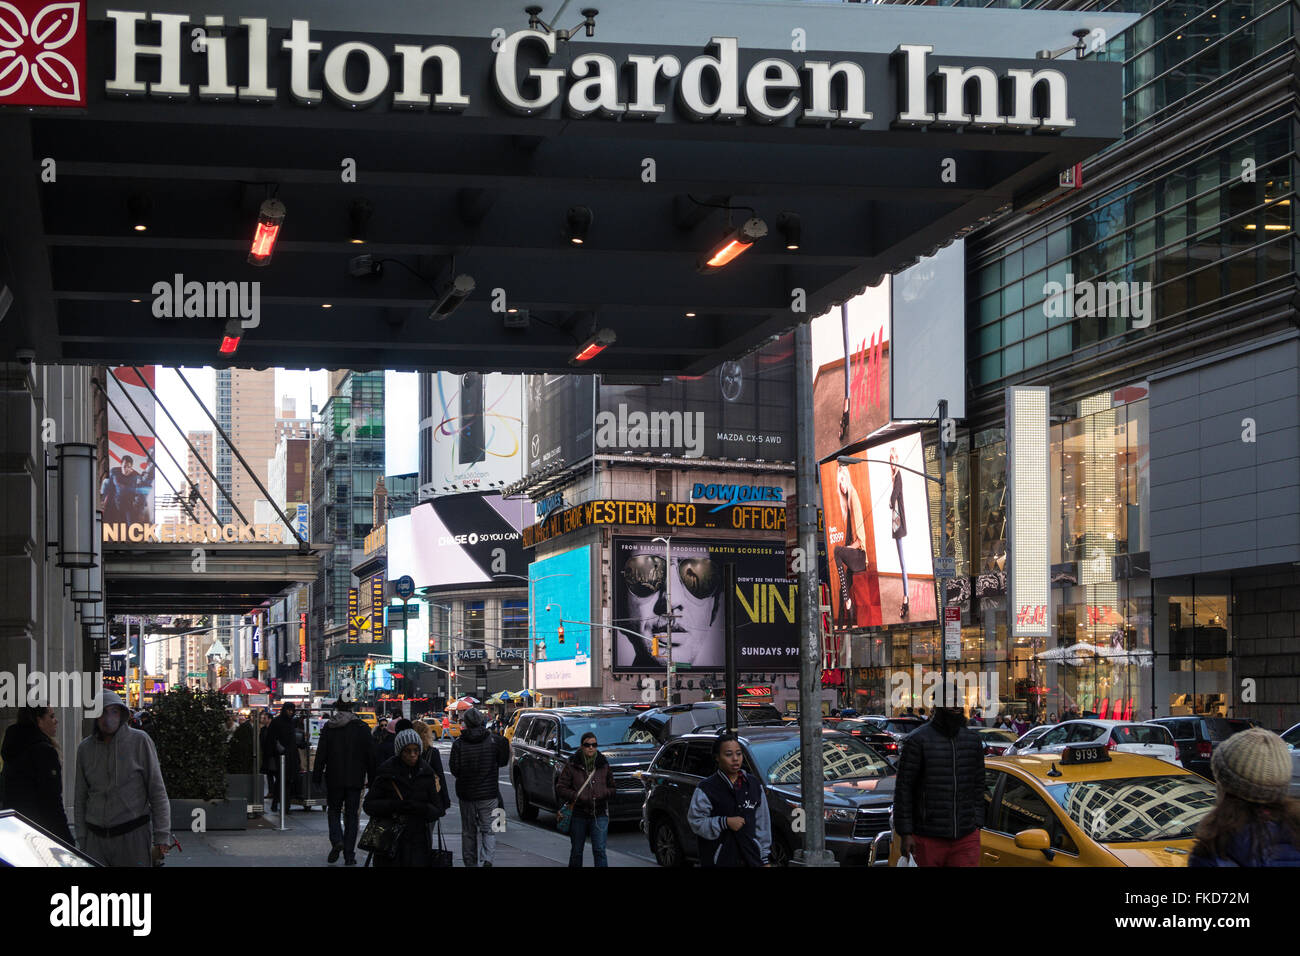 Hilton Garden Inn, vor dem Eingang Zeichen, 42nd Street, Times Square, New York, USA Stockfoto